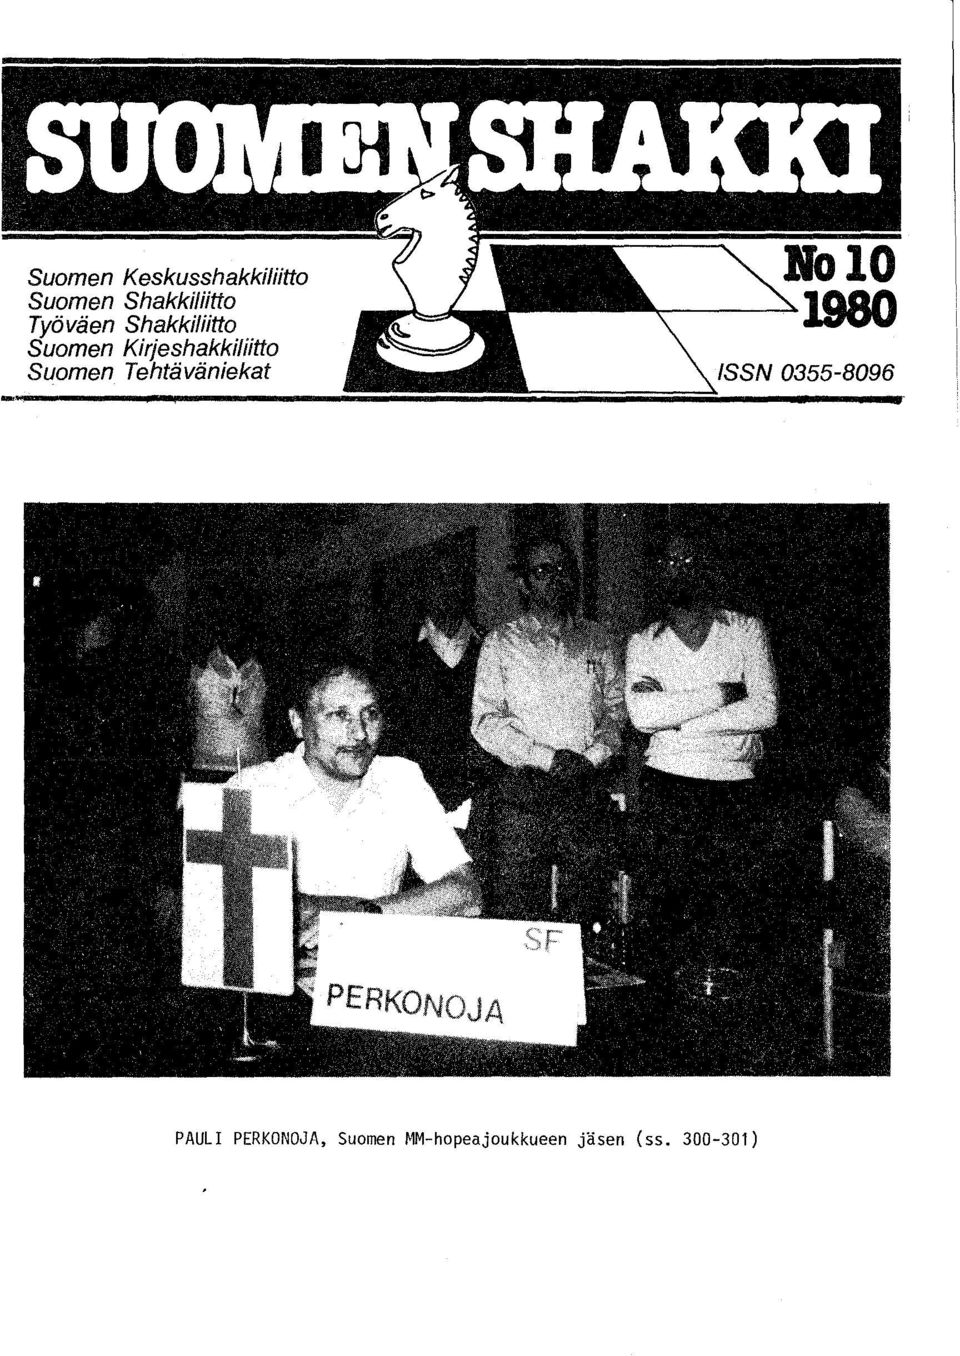 Suomen Tehtäväniekat ISSN 0355-8096 PAULI